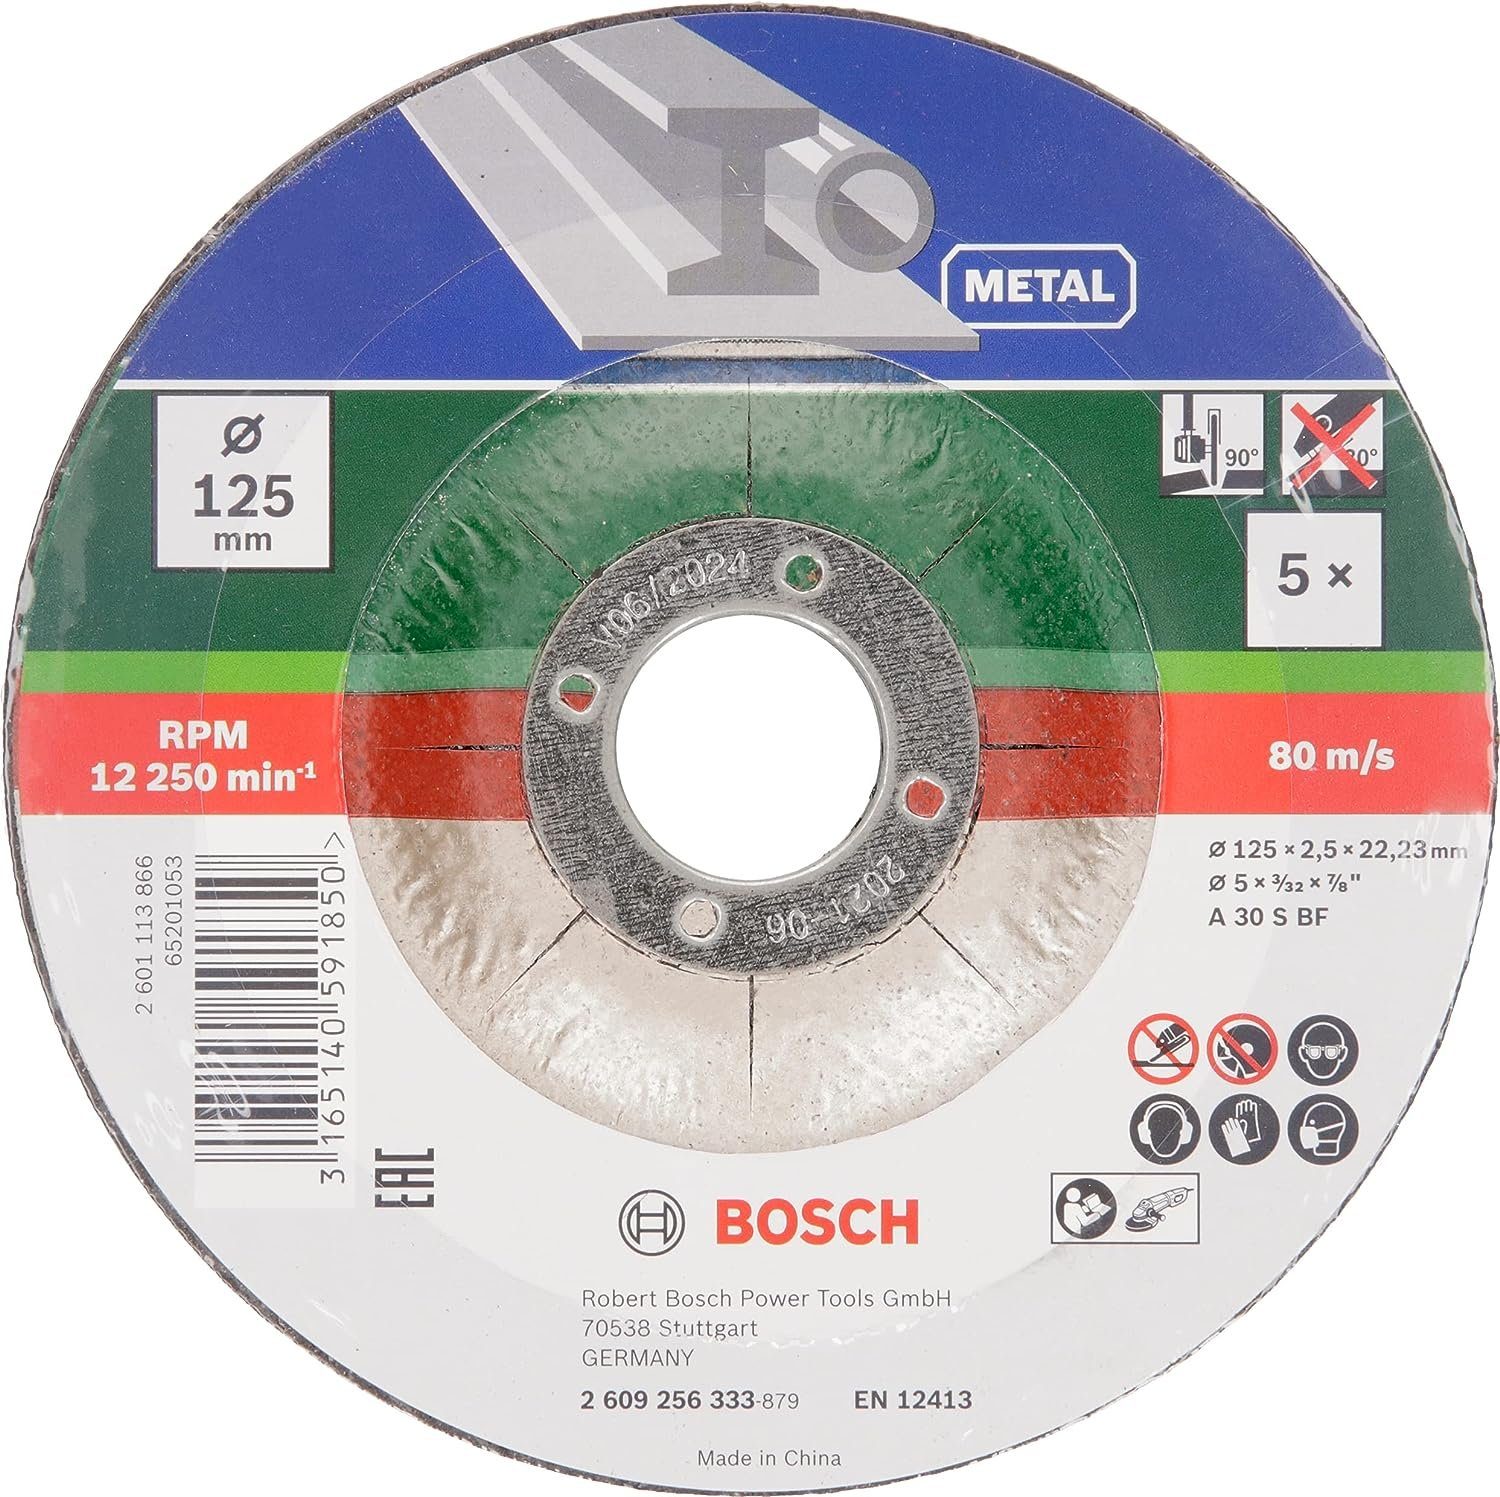 x Trennscheibe Metal BOSCH for 5 gekröpft 30 2,5 125 mm Bosch S Bohrfutter BF mm A